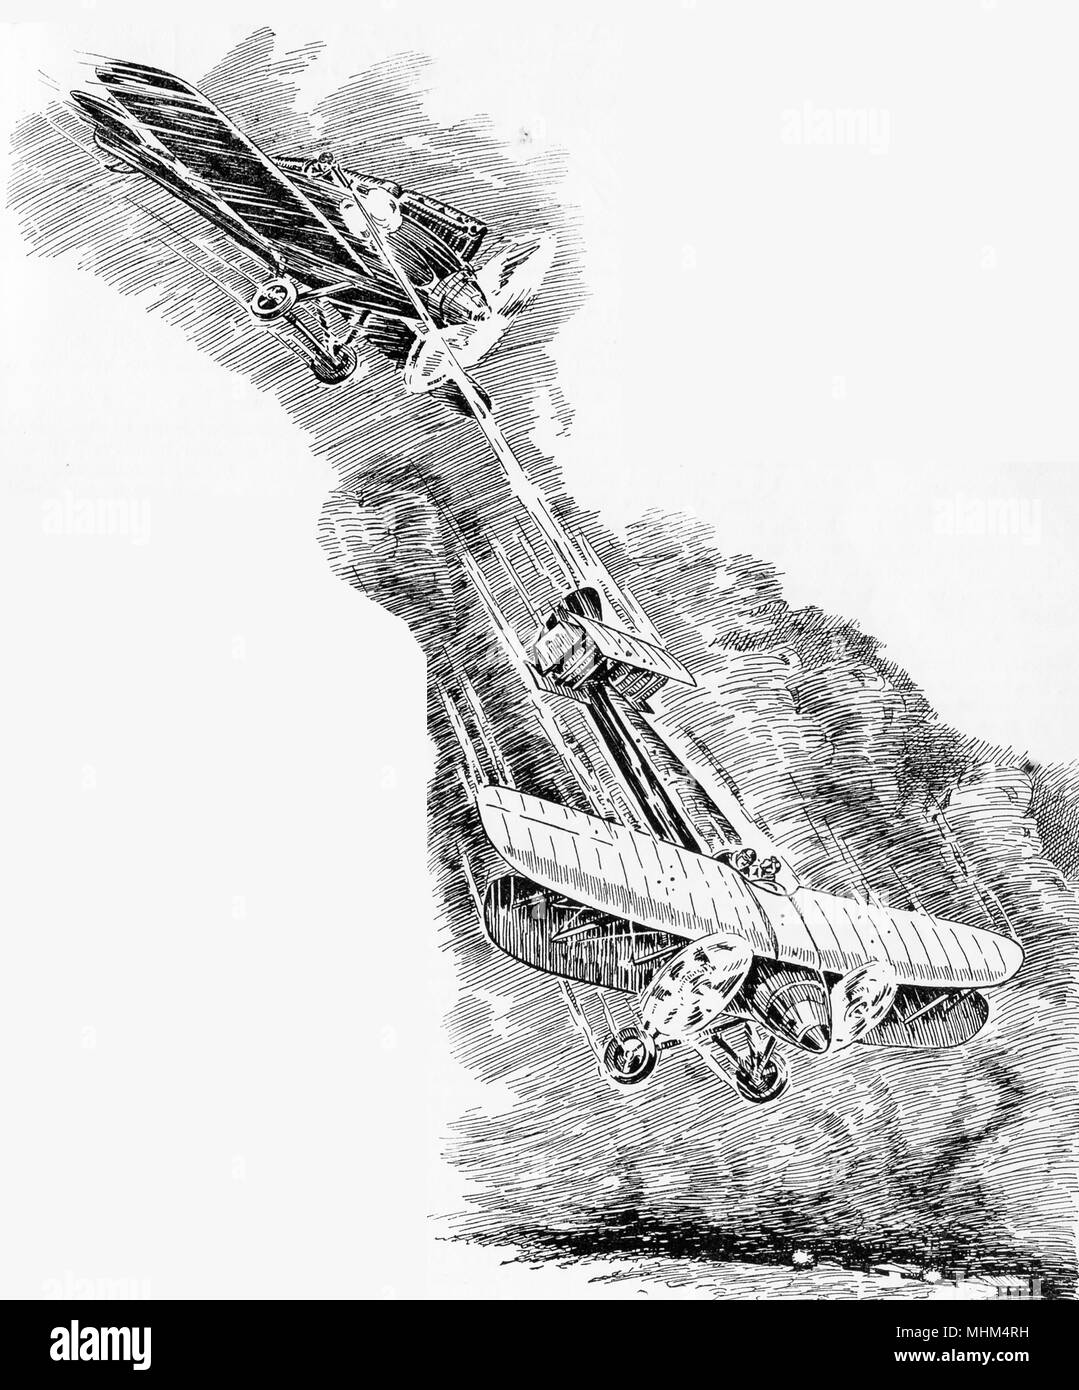 1930 Das Bild eines britischen Doppeldecker abgeschossen durch eine feindliche Flugzeug, Stockfoto